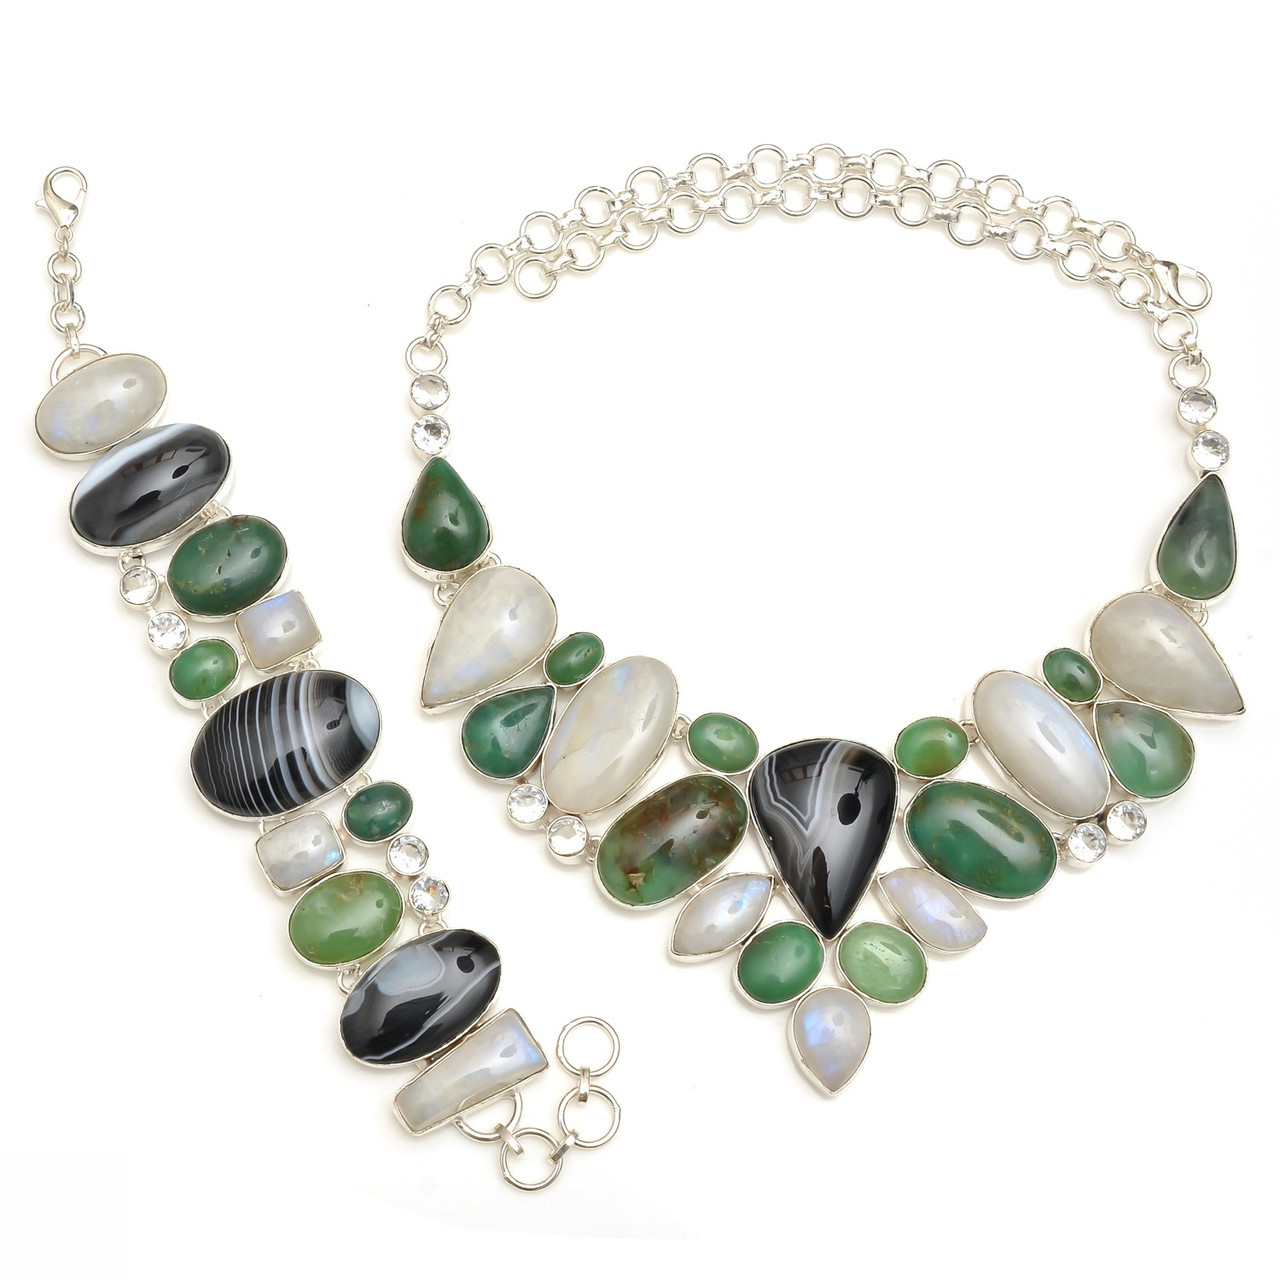 Chrysoprase, Moonstone, Banded Agate Necklace & Bracelet Set